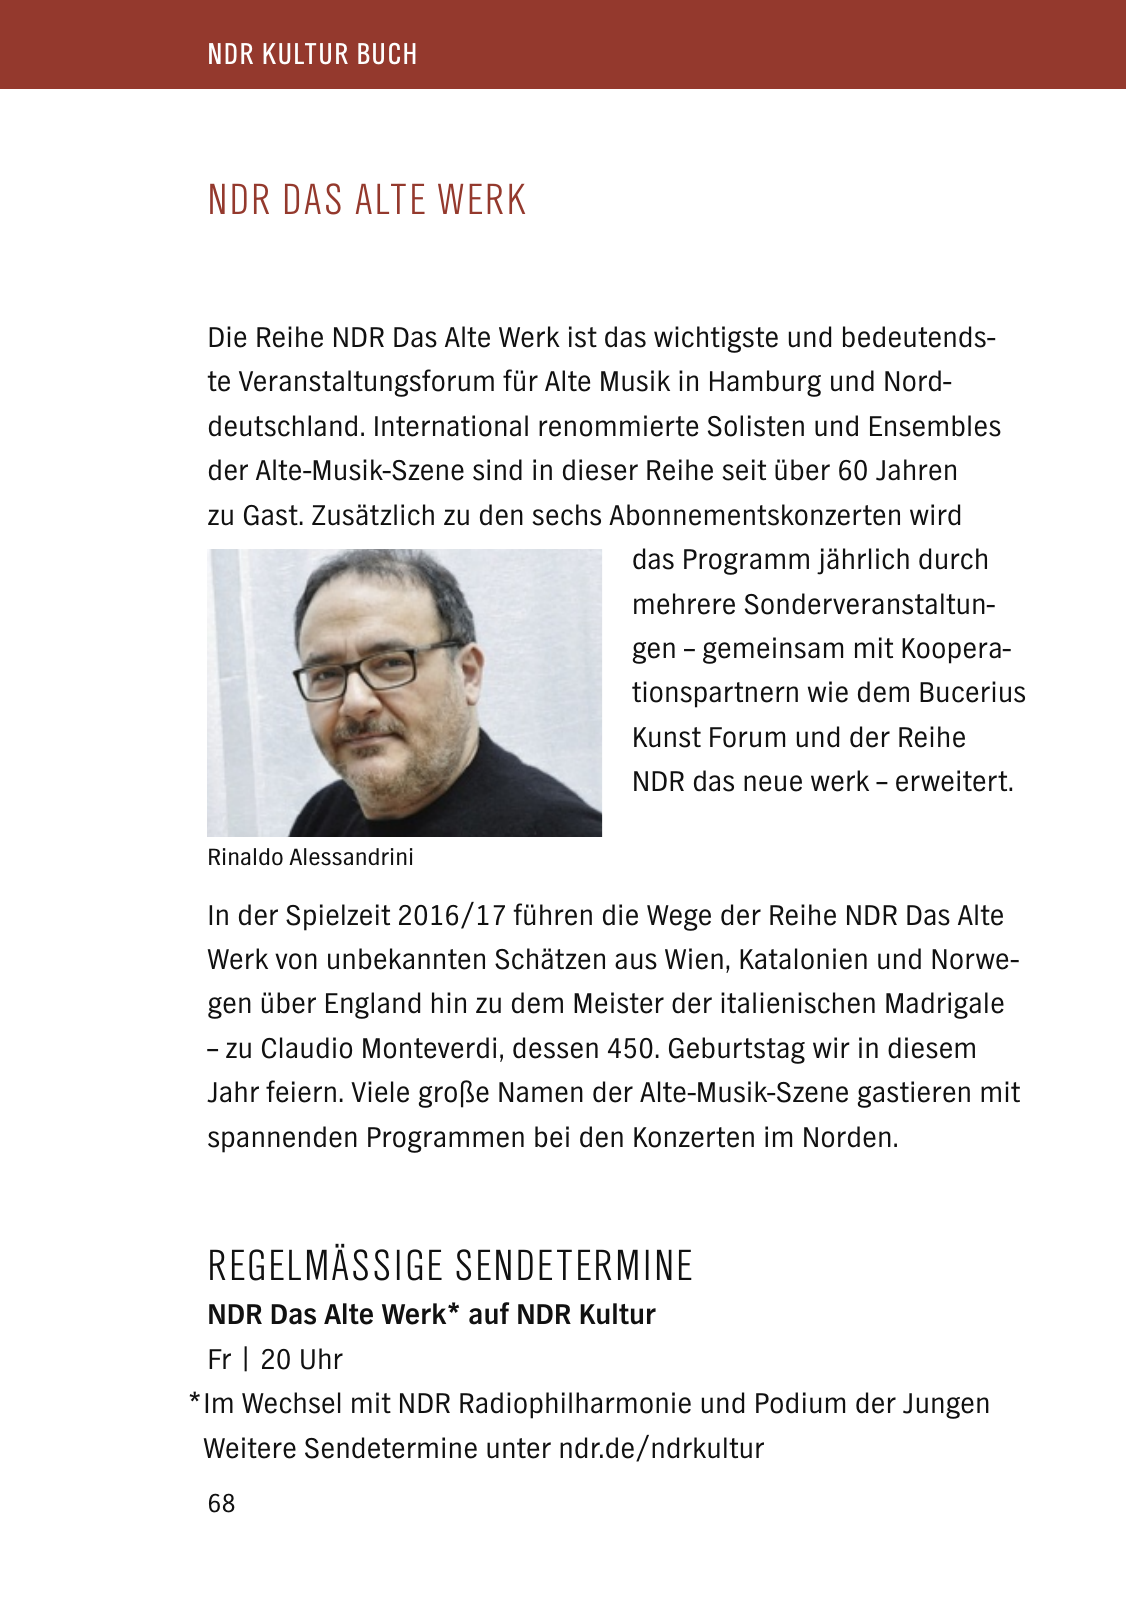 Vorschau NDR Kultur Buch 2017 Seite 70